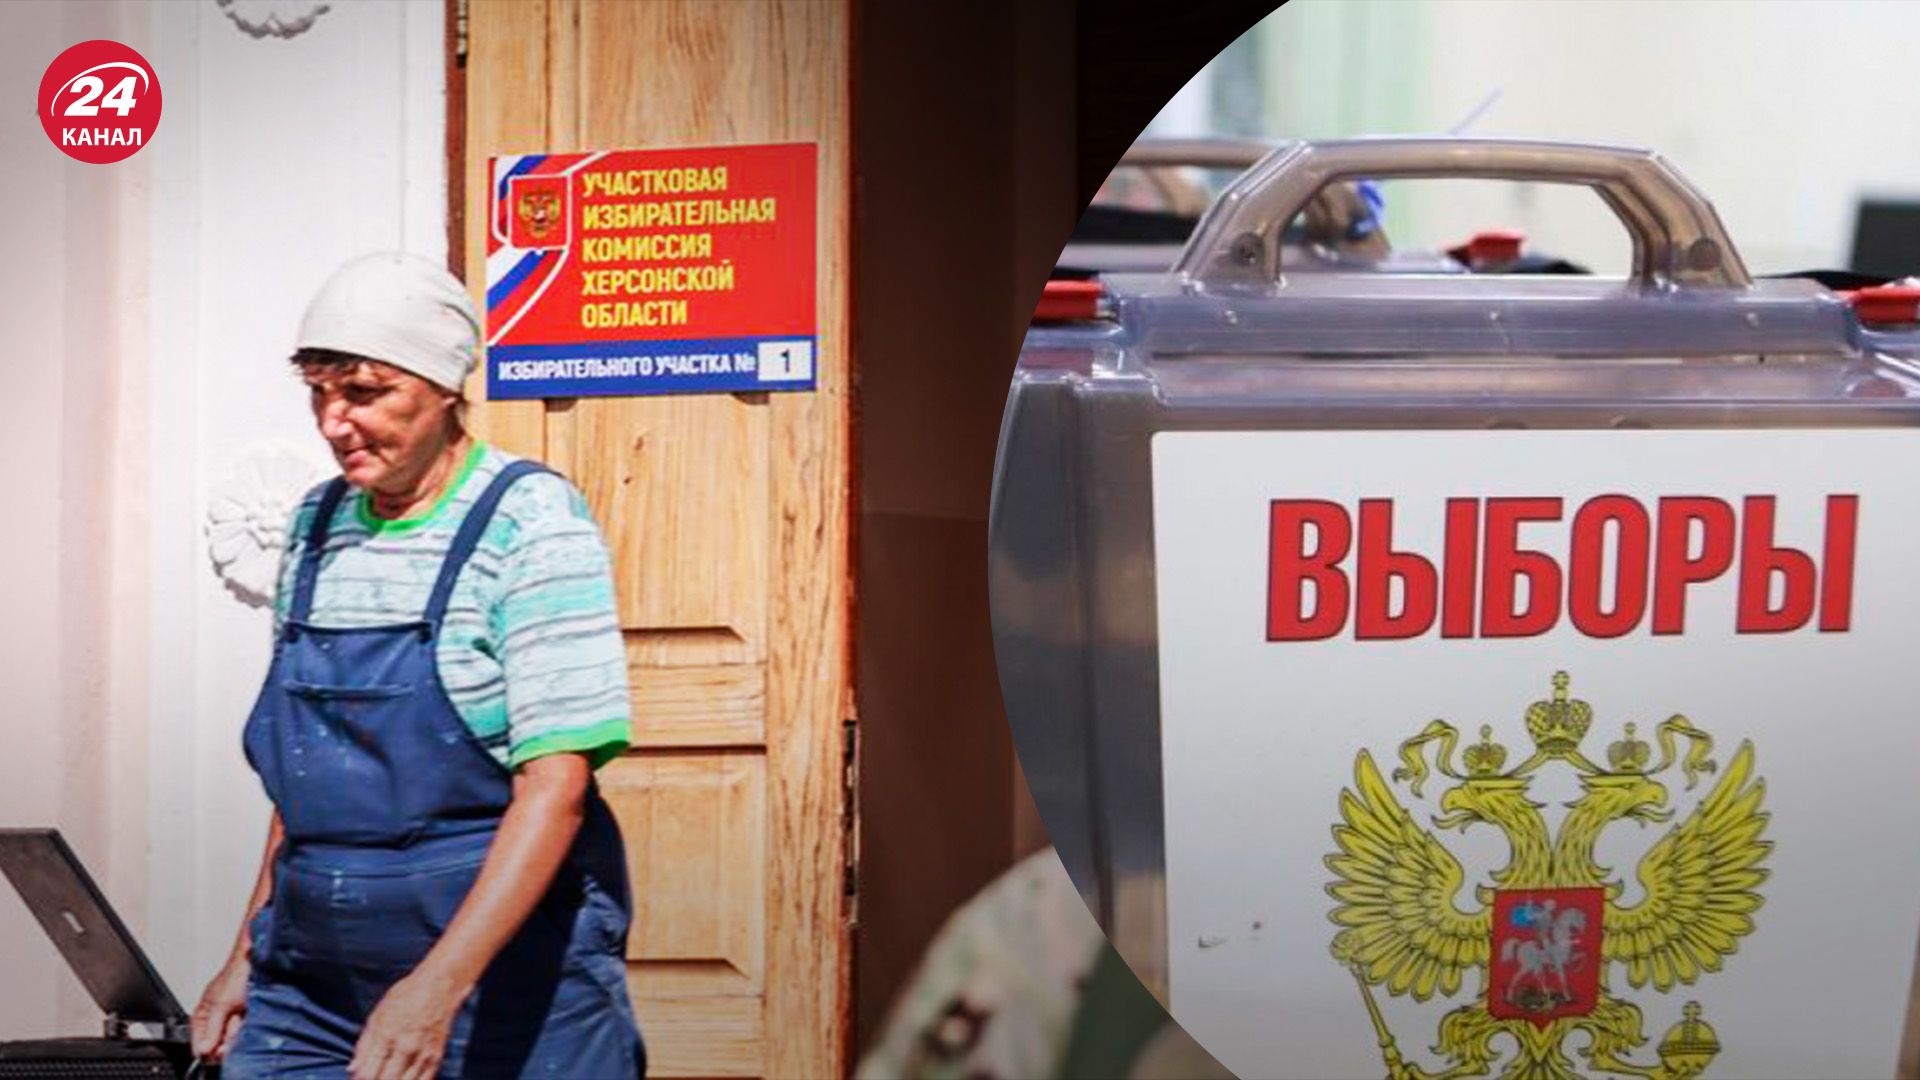 Псевдовыборы в Херсонской области - как россияне заставляют украинцев голосовать - 24 Канал